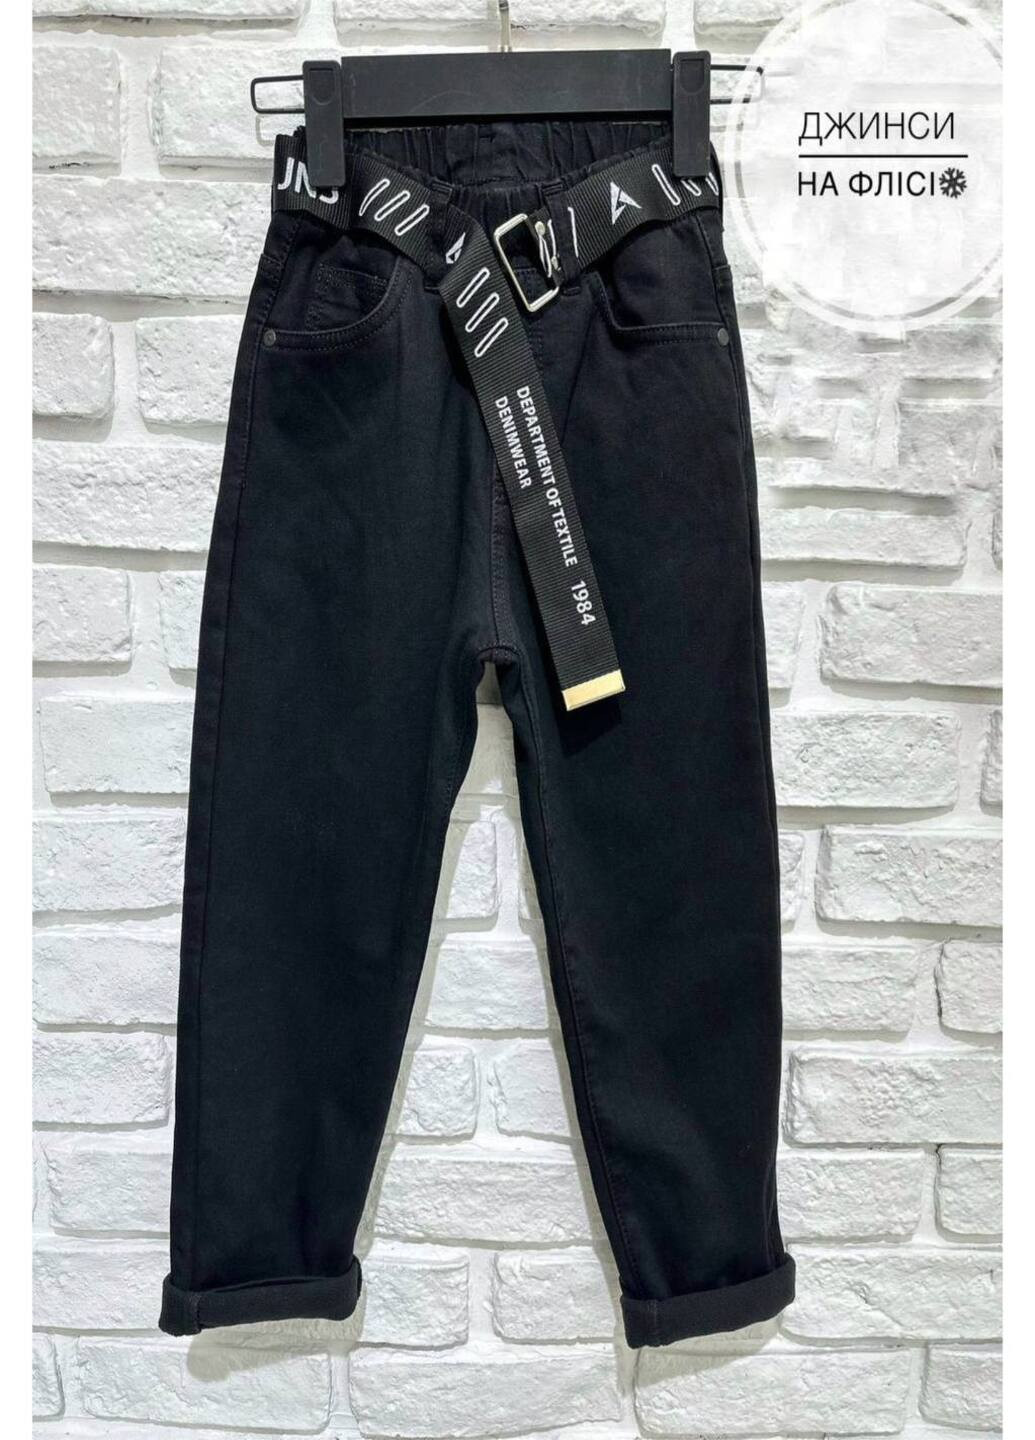 Черные теплые джинсы для мальчика Altun